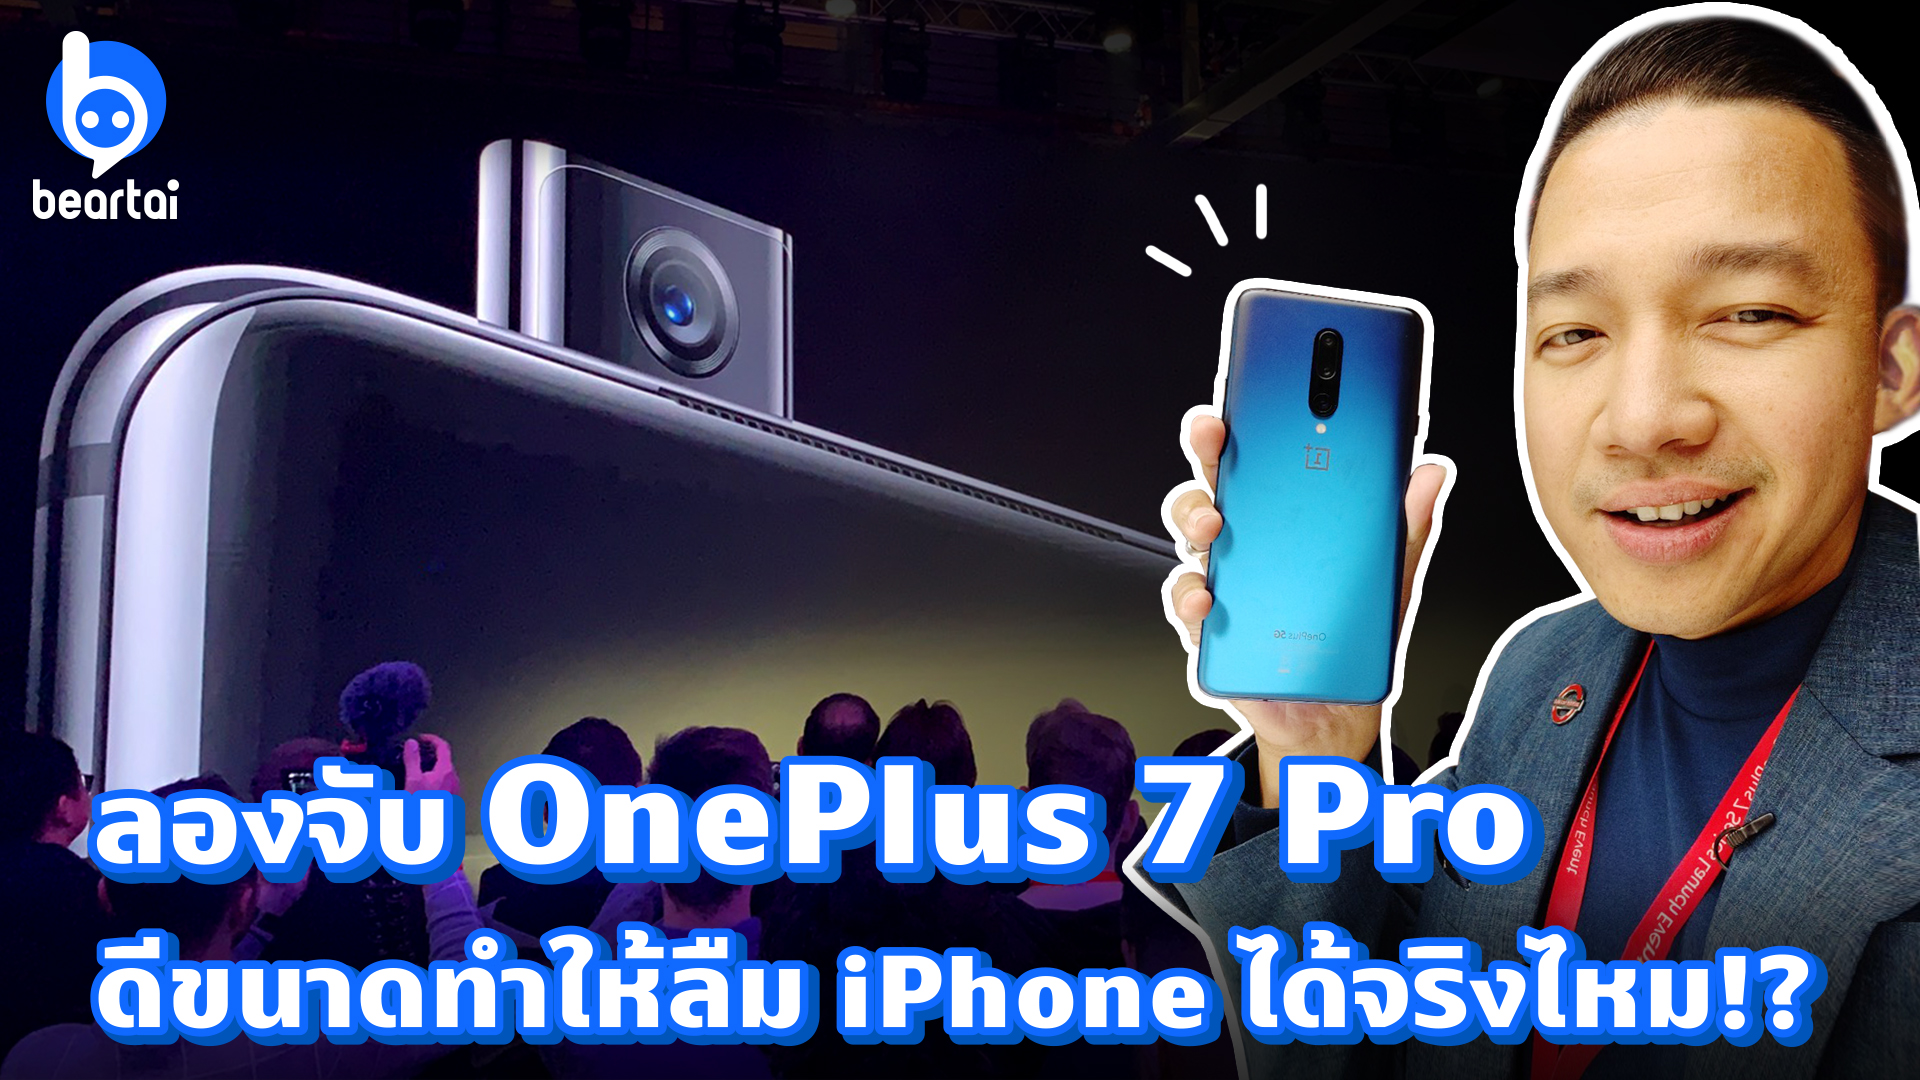 ลองจับ OnePlus 7 Pro ดีขนาดทำให้ลืม iPhone ได้จริงไหม!?